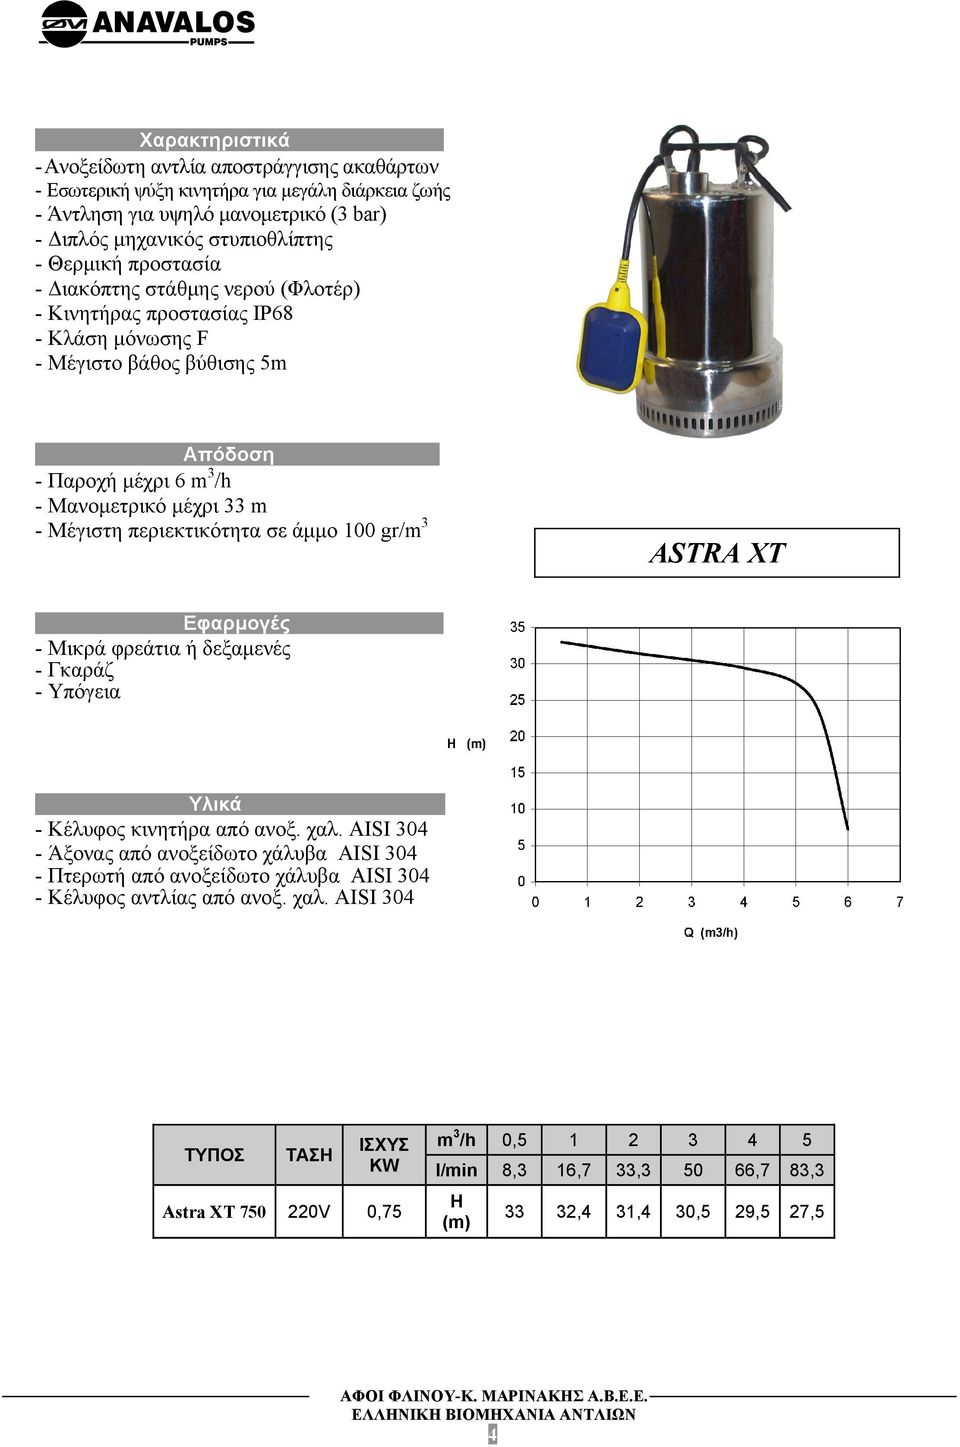 Διακόπτης στάθμης νερού (Φλοτέρ) - Κινητήρας προστασίας IP68 - Κλάση μόνωσης F - Μέγιστο βάθος βύθισης 5m Απόδοση.